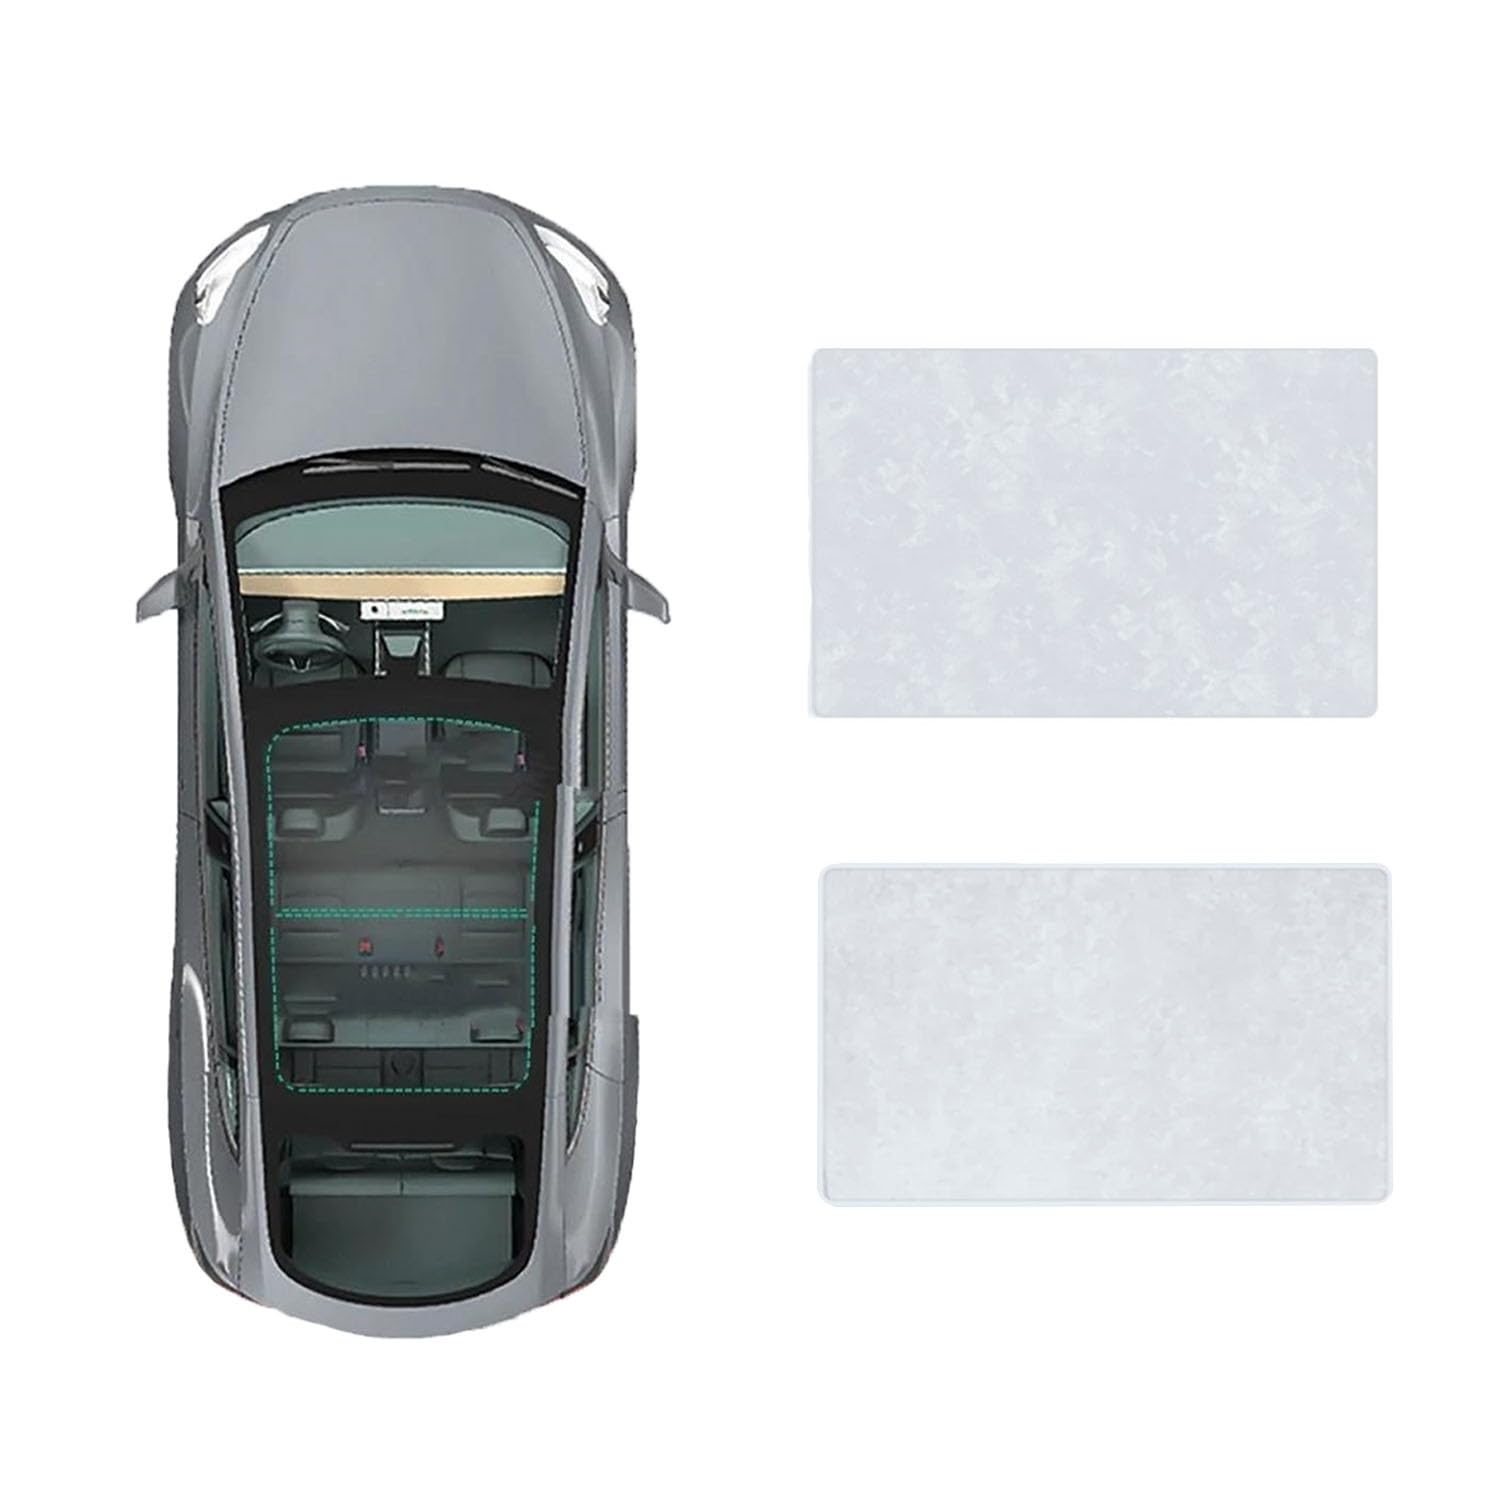 Für Mercedes Benz E-Class 2010-2016 Auto-Schiebedach-Beschattung,Dach Wärme Isolierung Anti-UV Visier Auto Zubehör,B-Gray white Suede von ANRAM